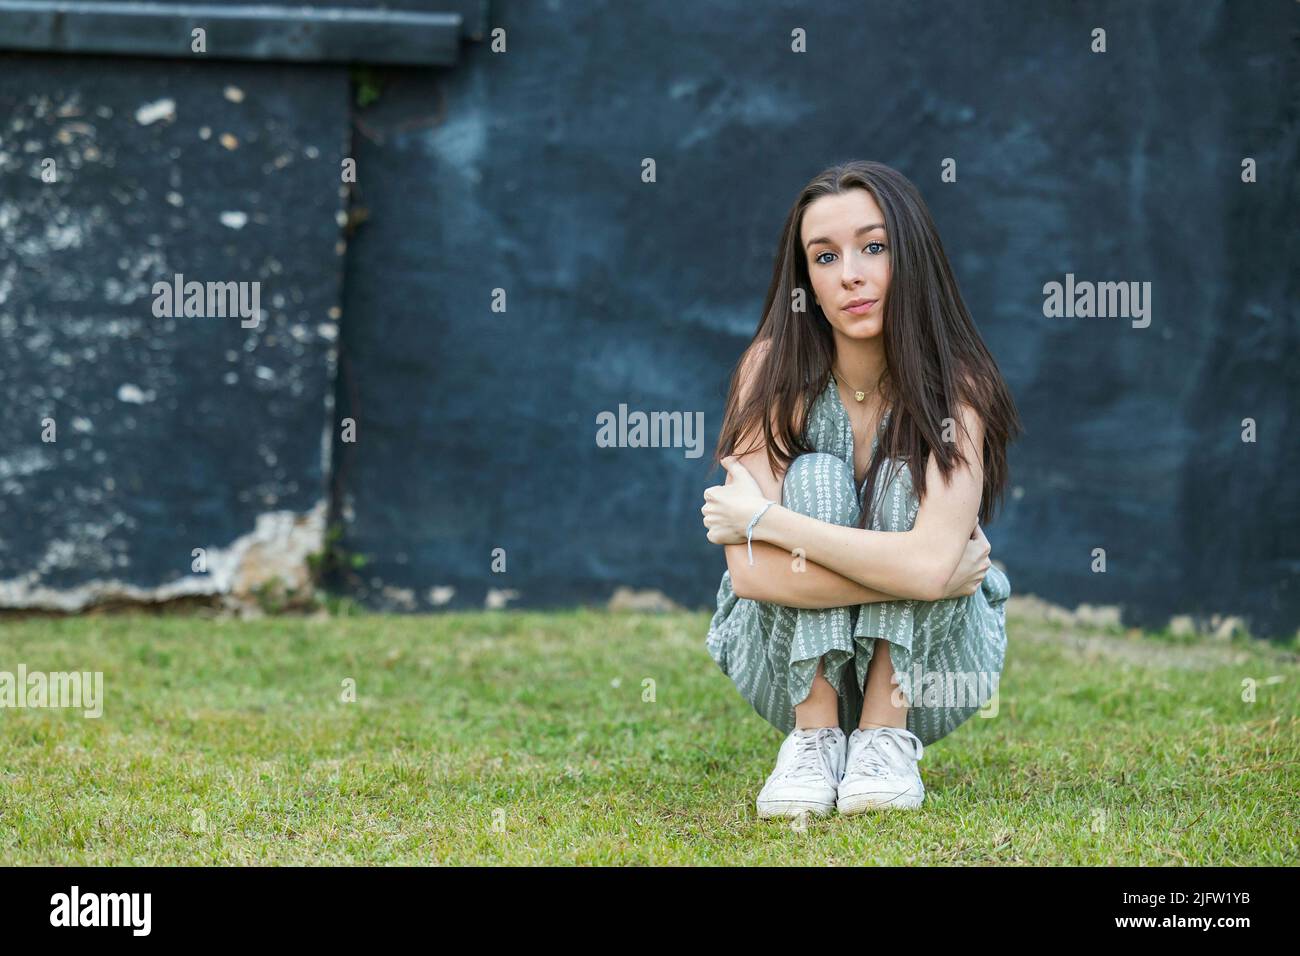 Una bella ragazza bruna teen con uno sguardo serio seduta e appoggiata contro un muro in pensiero con un blu nero ruvido muro della città dietro di lei Foto Stock